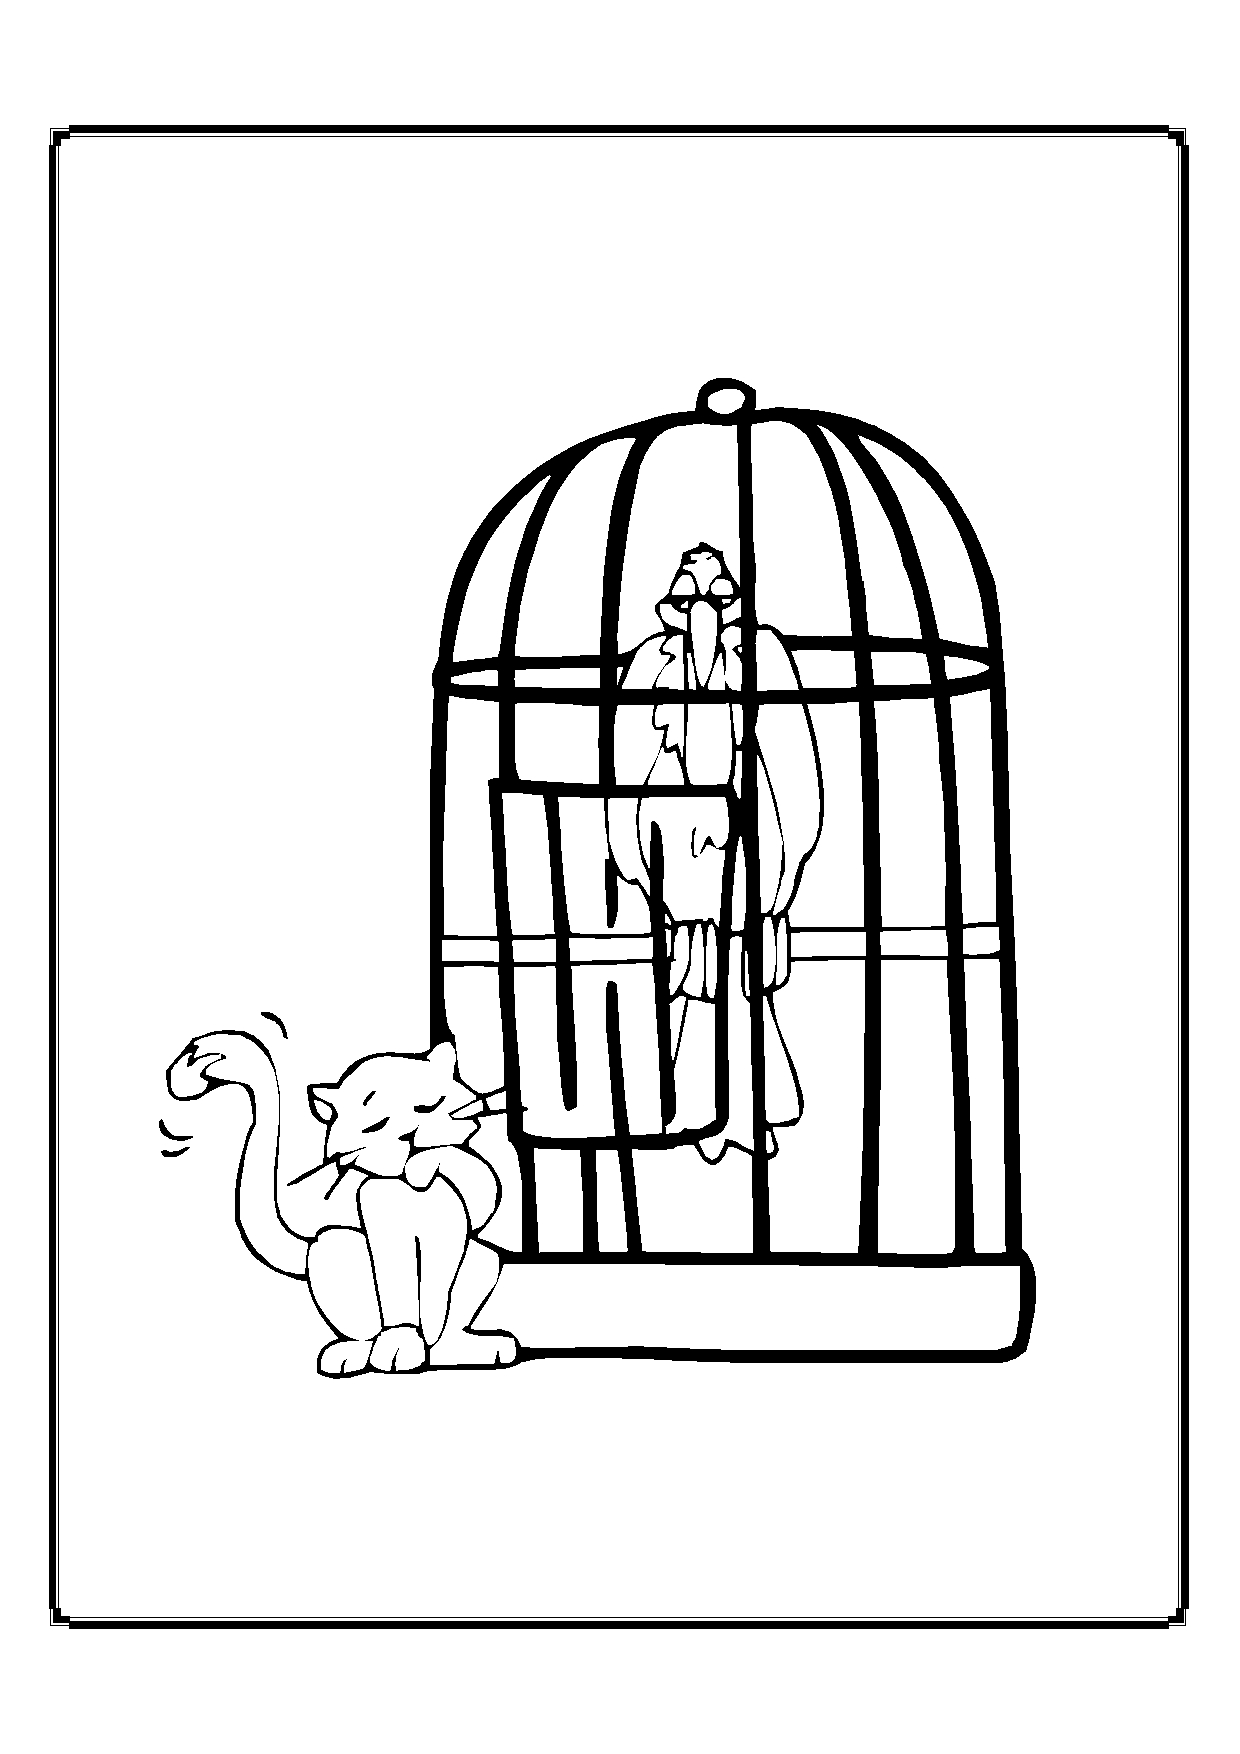 Kolorowanka kot mały siedzi przy klatce z sępem w środku i macha ogonem